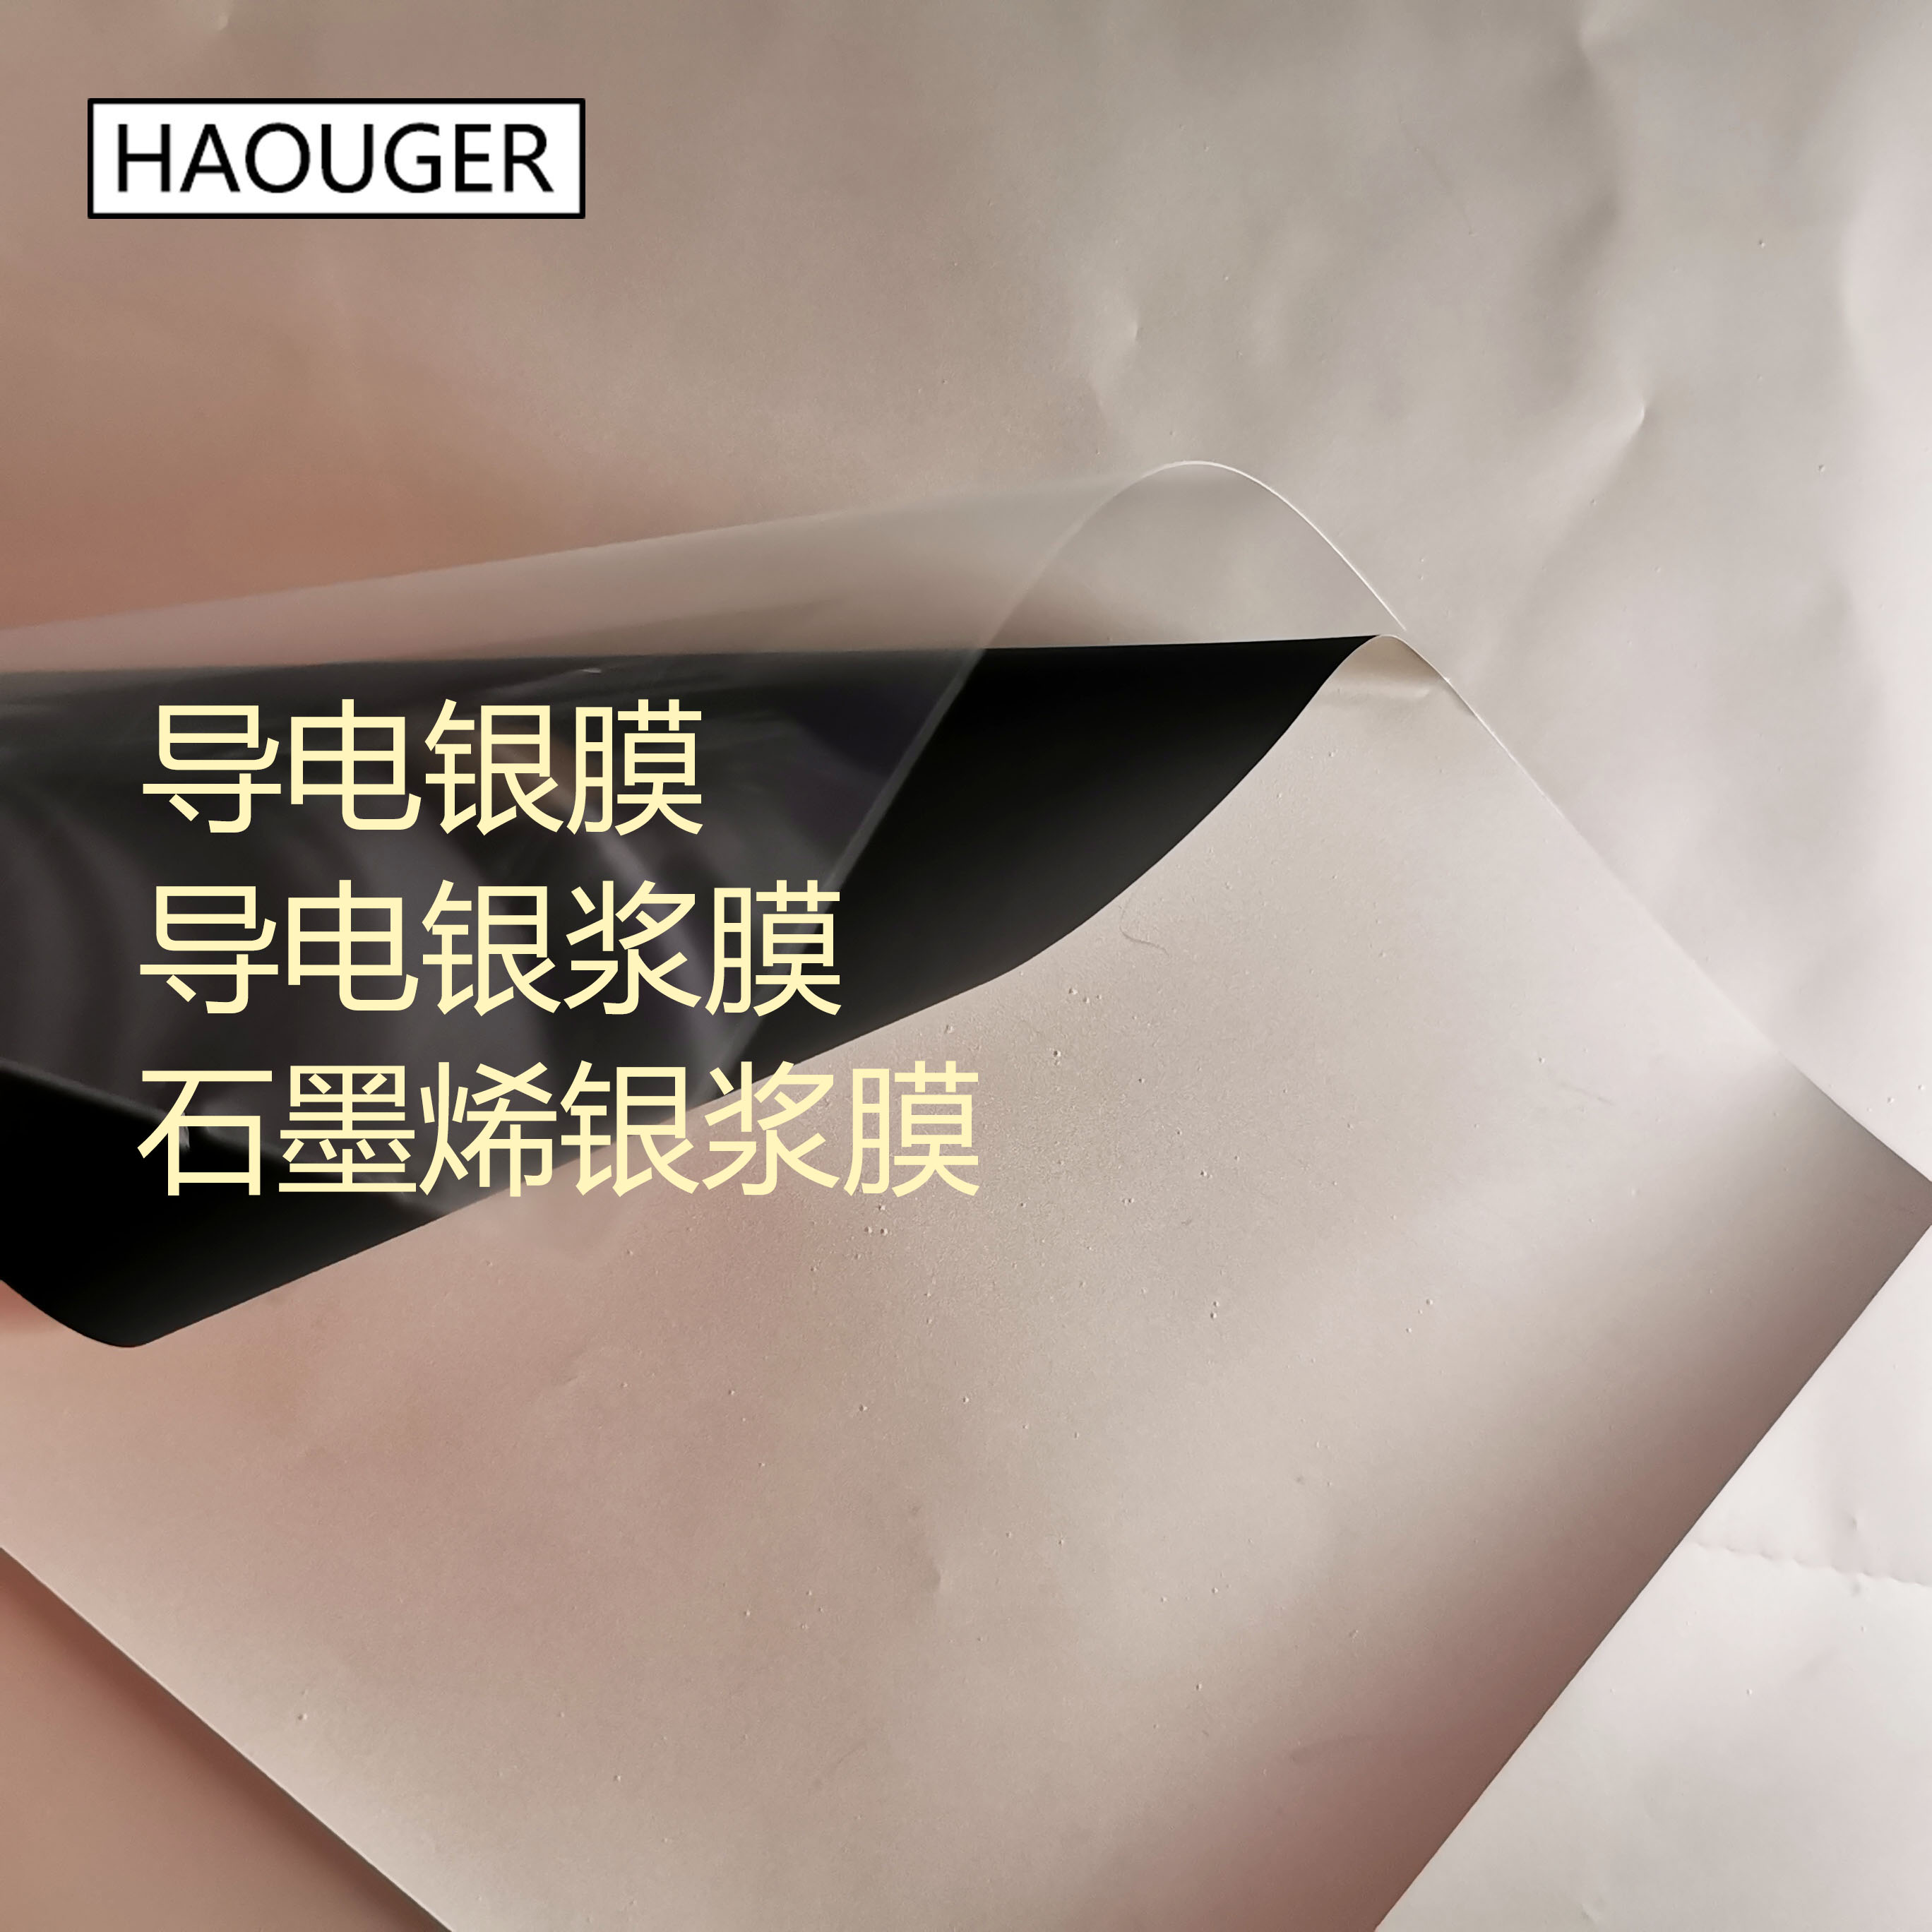 工厂直销 HAOUGER 防静电晶圆垫 防静电晶圆隔片 ESD防护 硅片纸